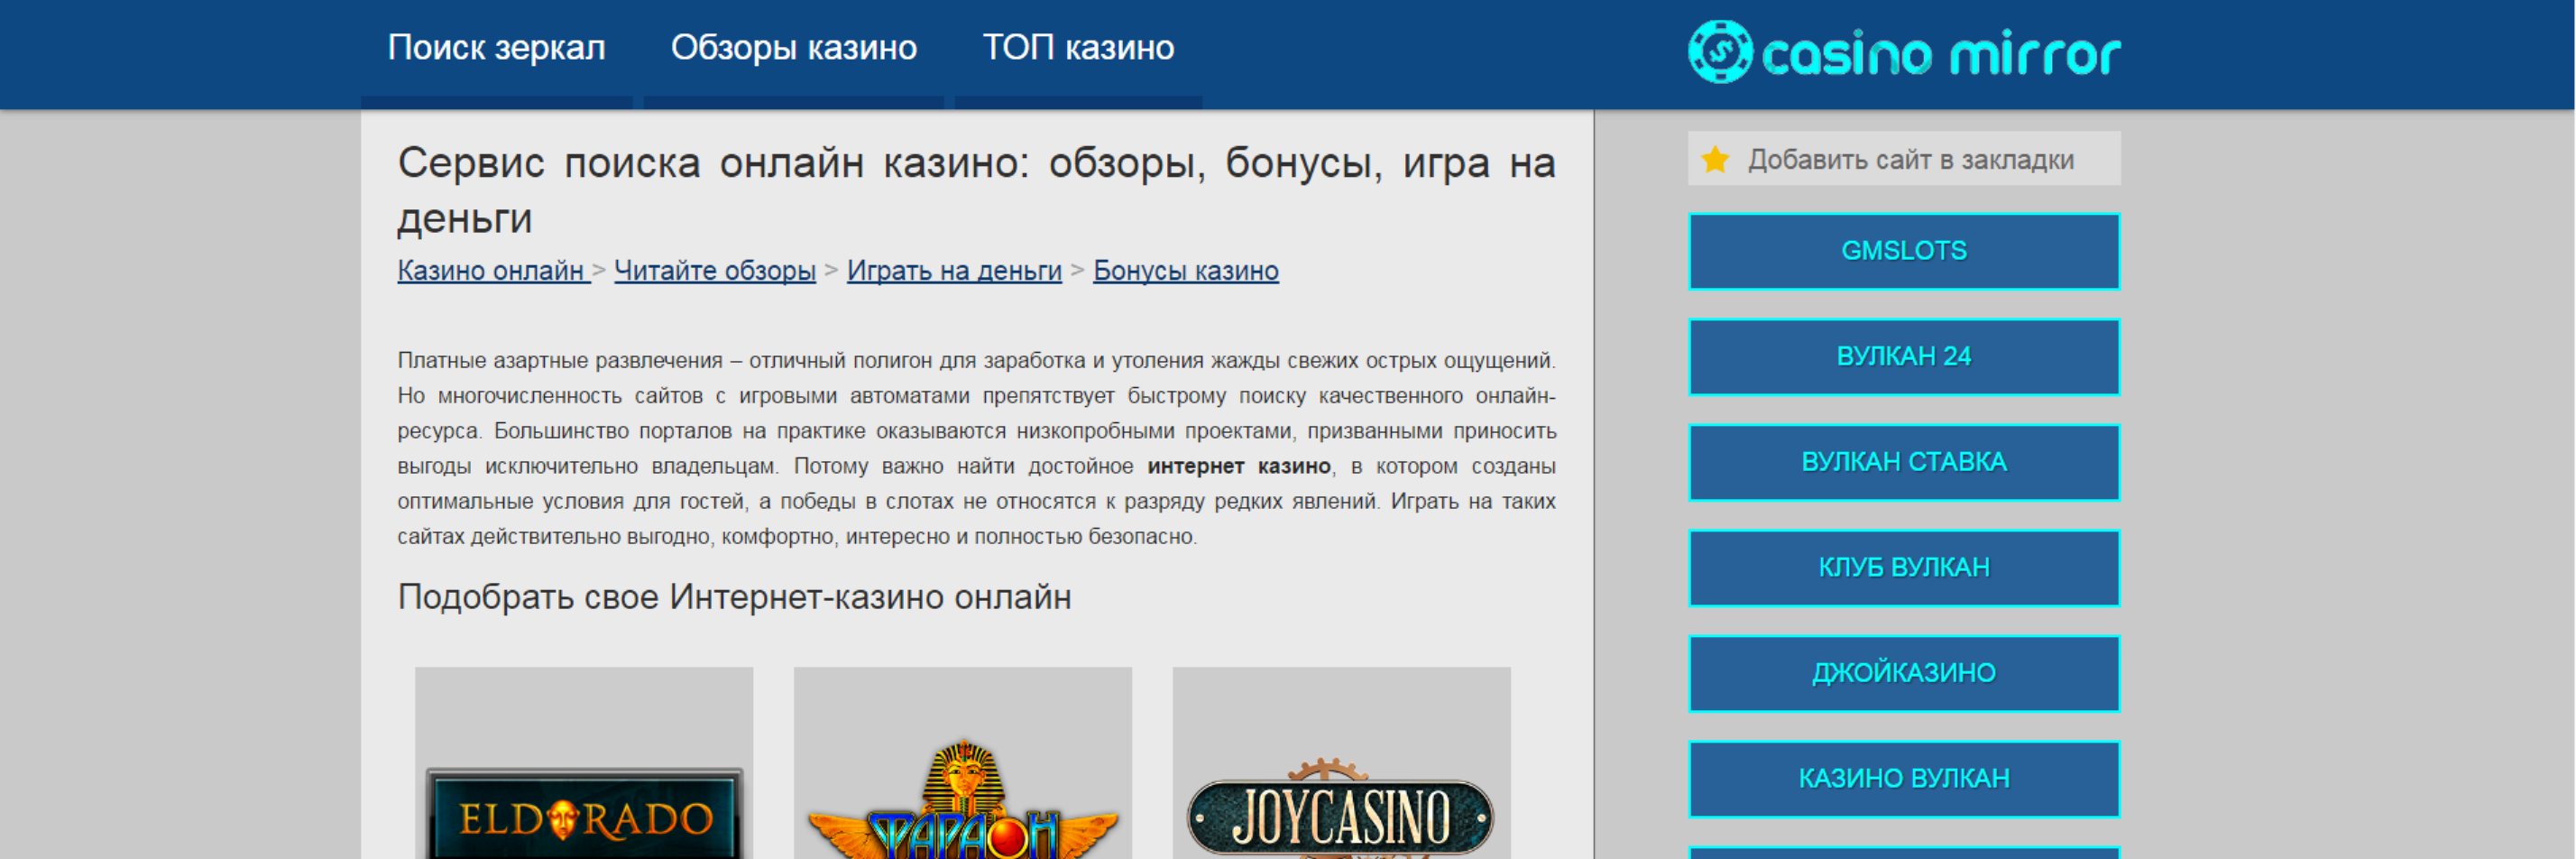 Joy casino официально мобильный сайт рабочее зеркало